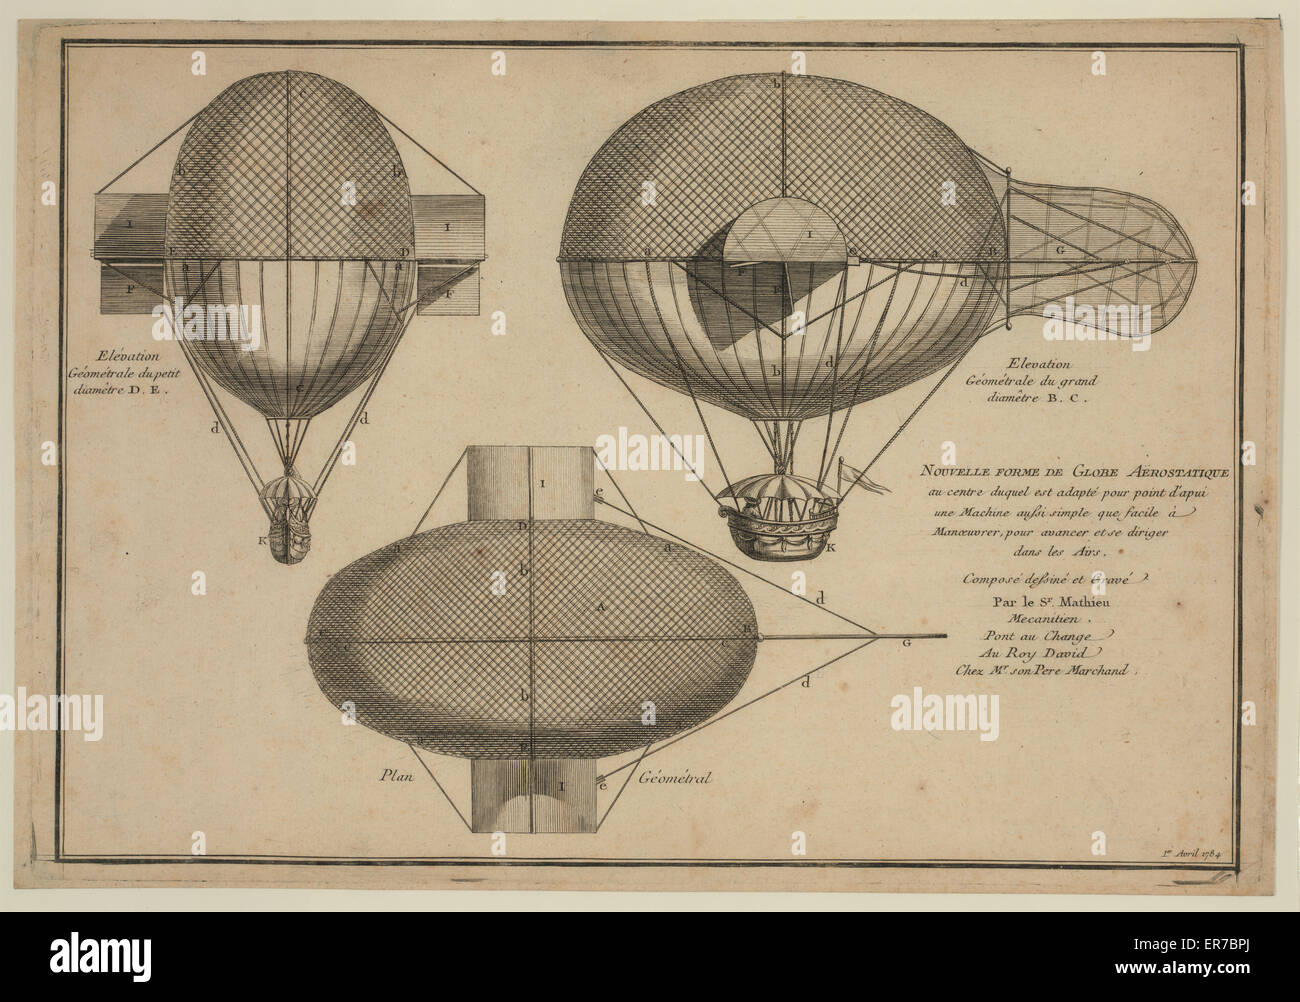 Dibujo de diseño muestra elevaciones laterales y frontales y plan de globo con dispositivos diseñados para facilitar la navegación y maniobrabilidad en el aire. Fecha 1784 1er avril. Foto de stock